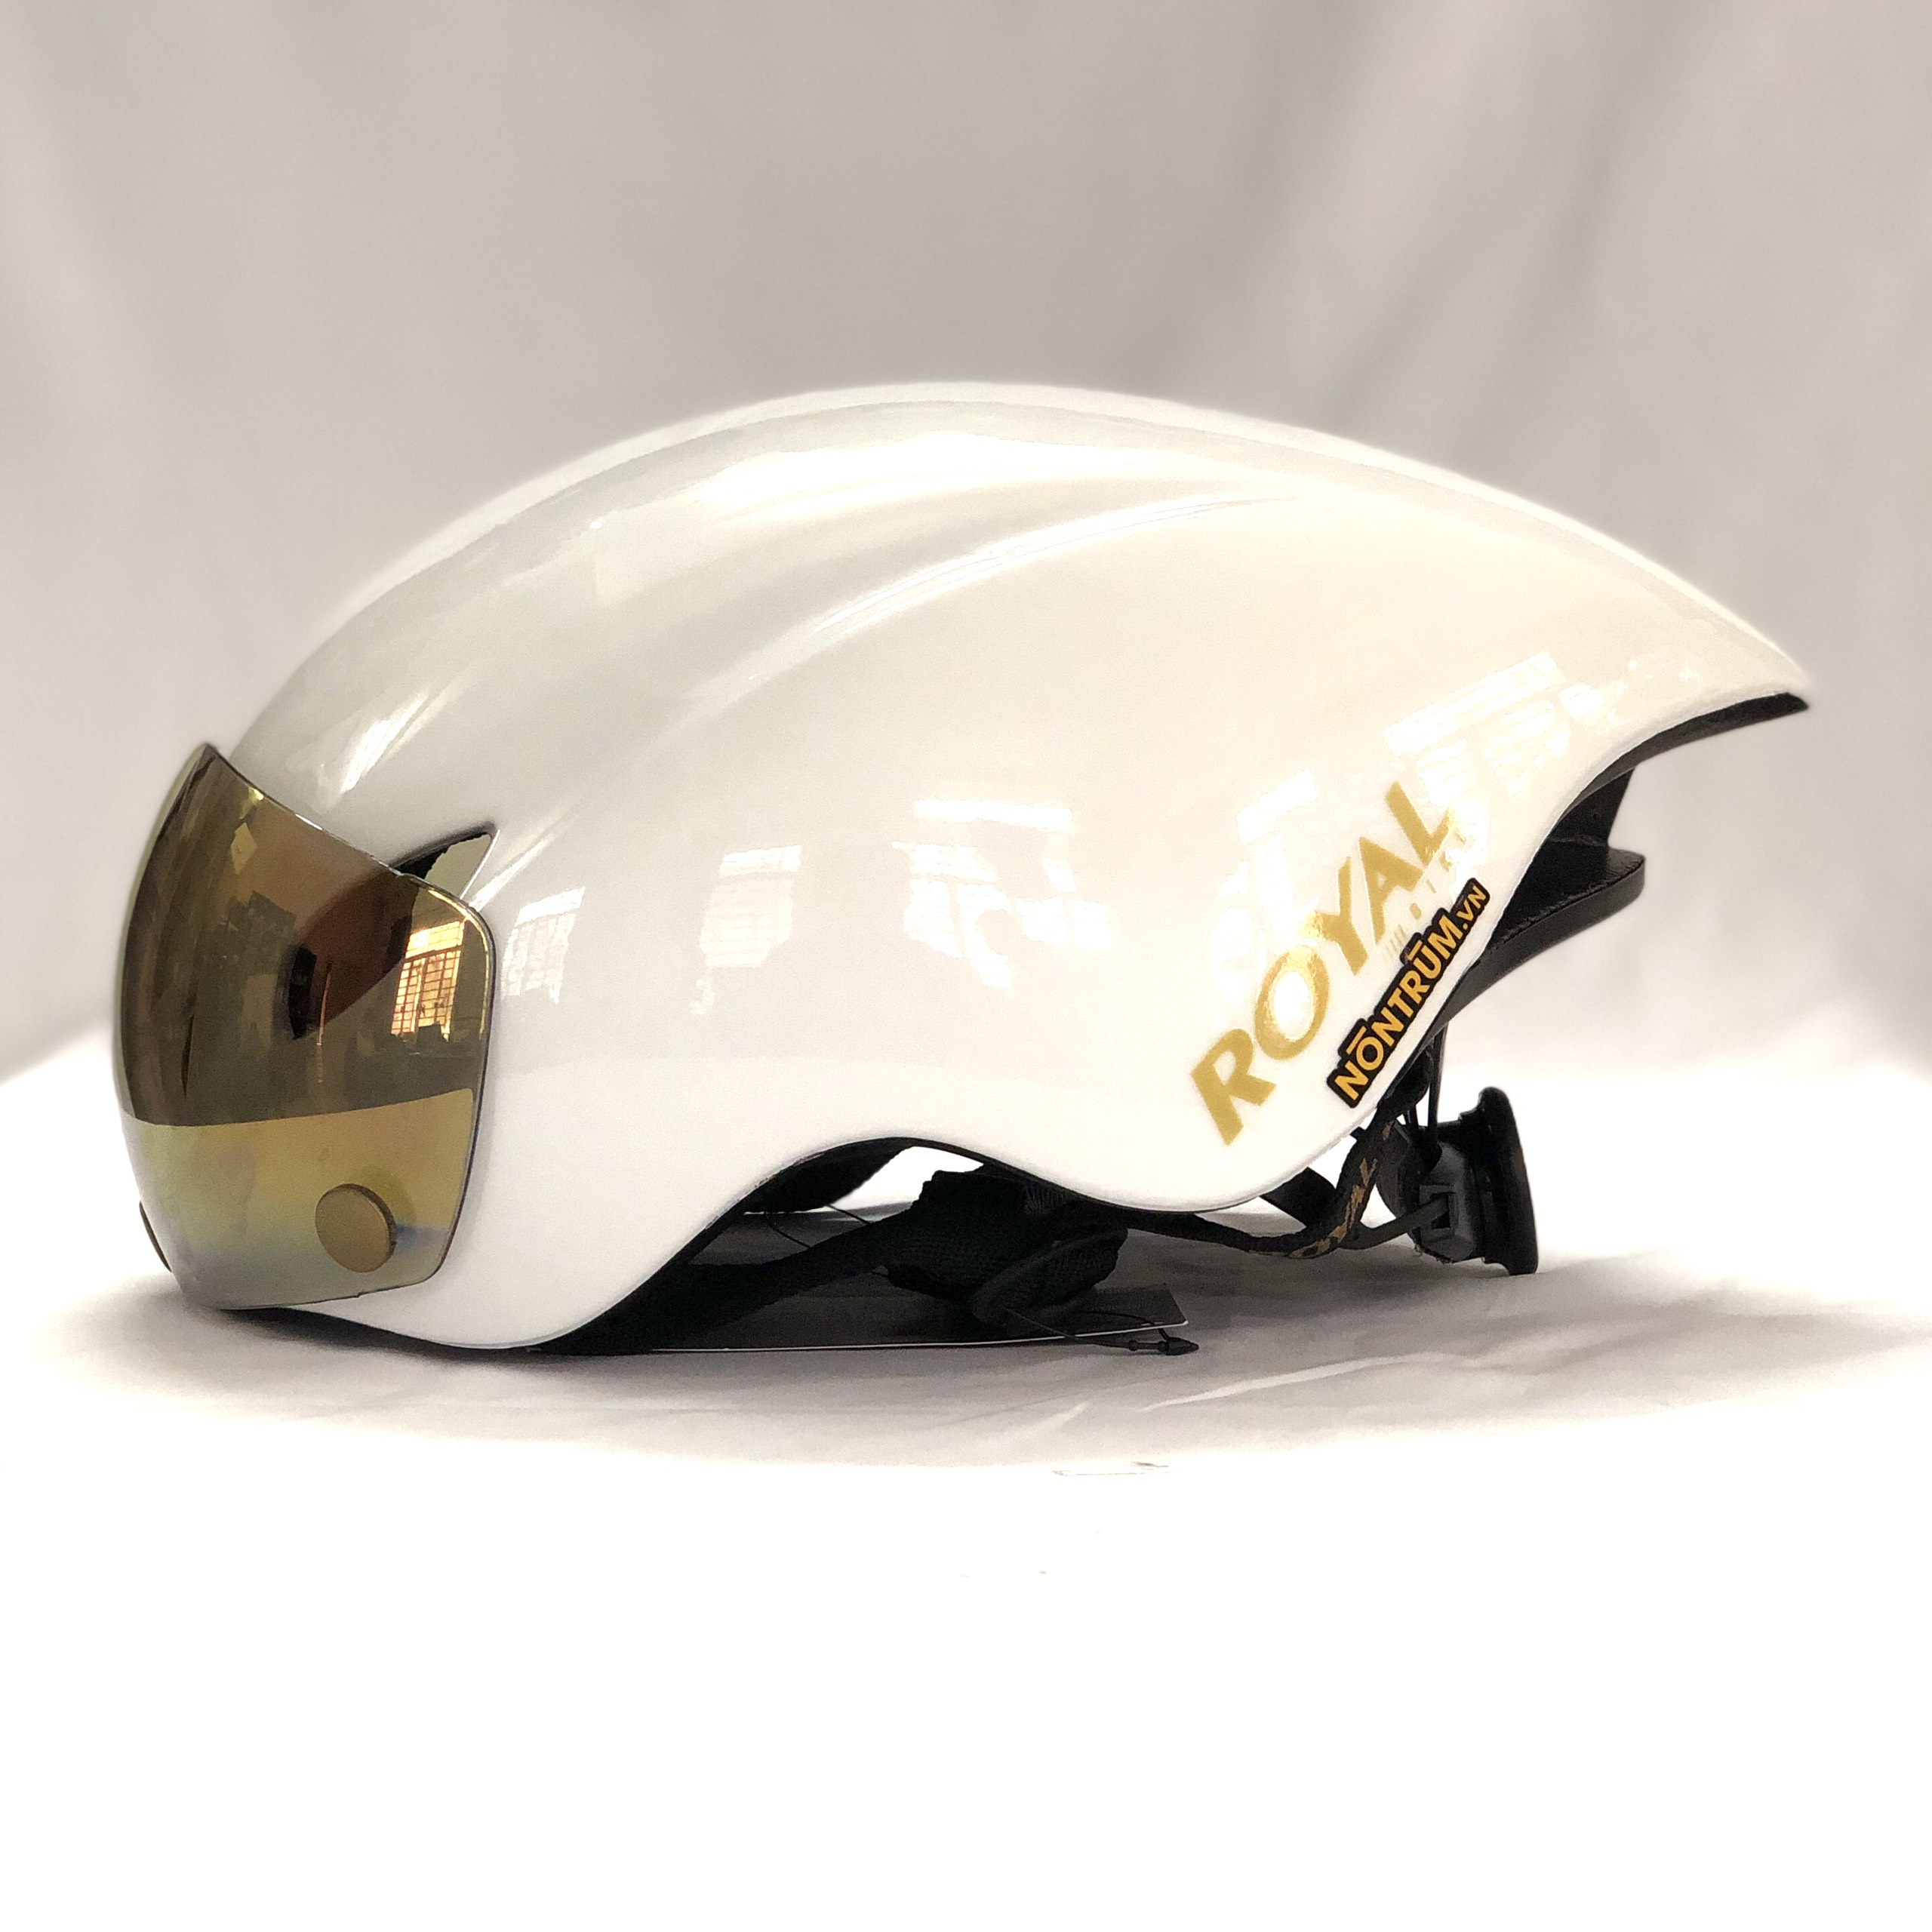 Nón xe đạp thể thao Royal MD16 có kính, giặt nón miễn phí 6 tháng và phân phối chính hãng tại hệ thống Nón Trùm